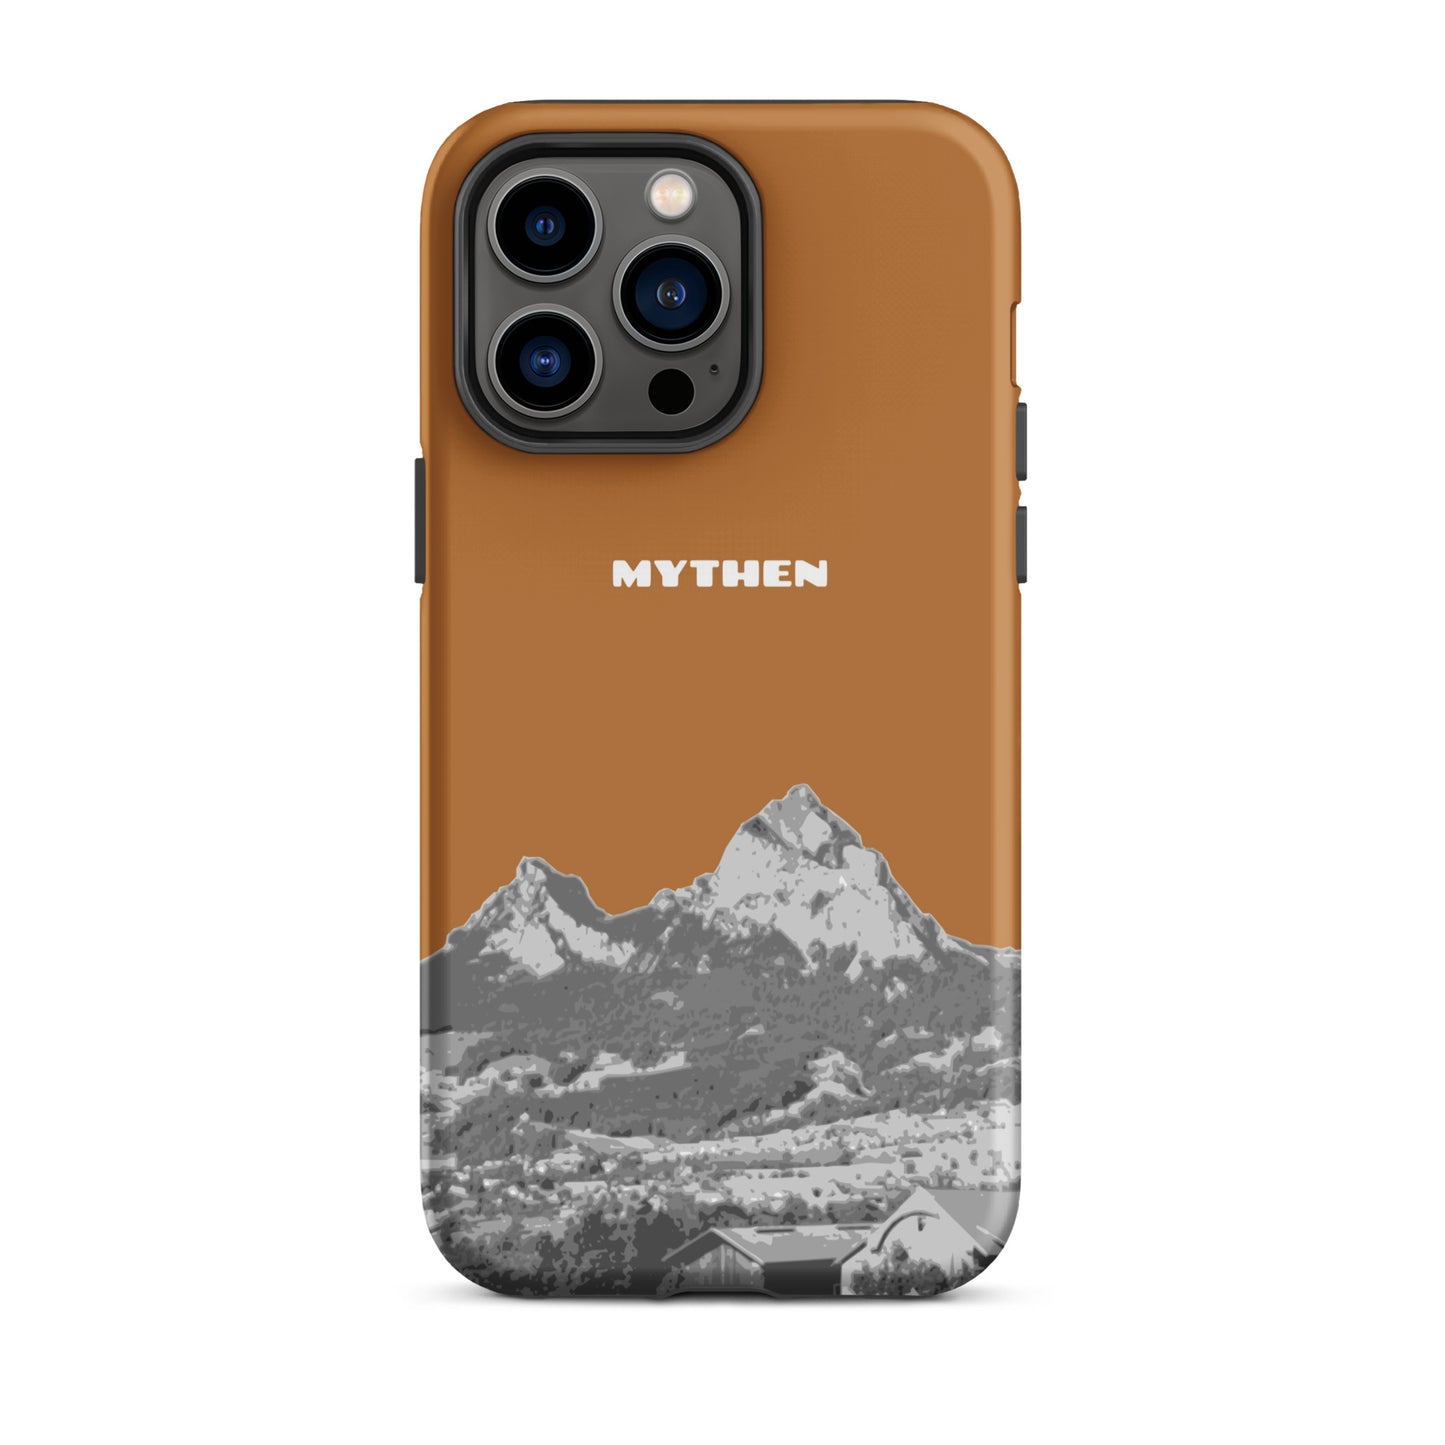 Hülle für das iPhone 14 Pro Max von Apple in der Farbe Kupfer, dass den Grossen Mythen und den Kleinen Mythen bei Schwyz zeigt. 